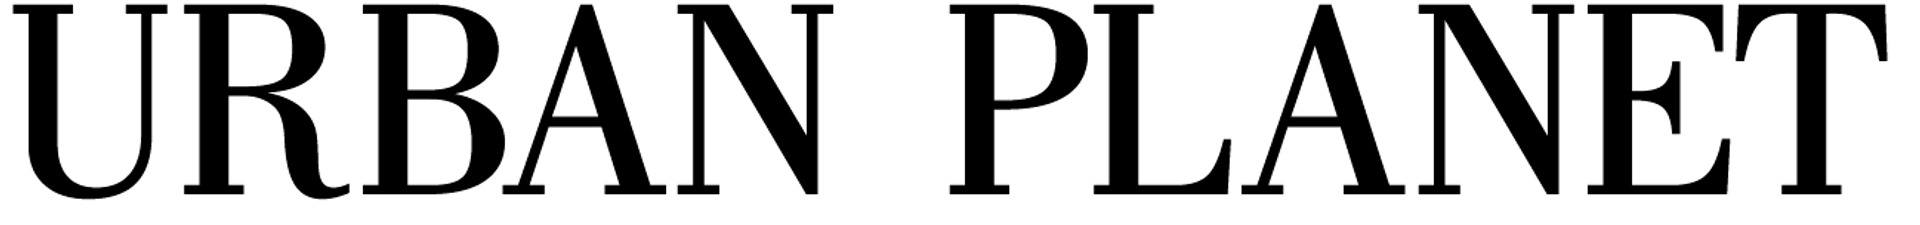 URBAN PLANET logo de circulaire